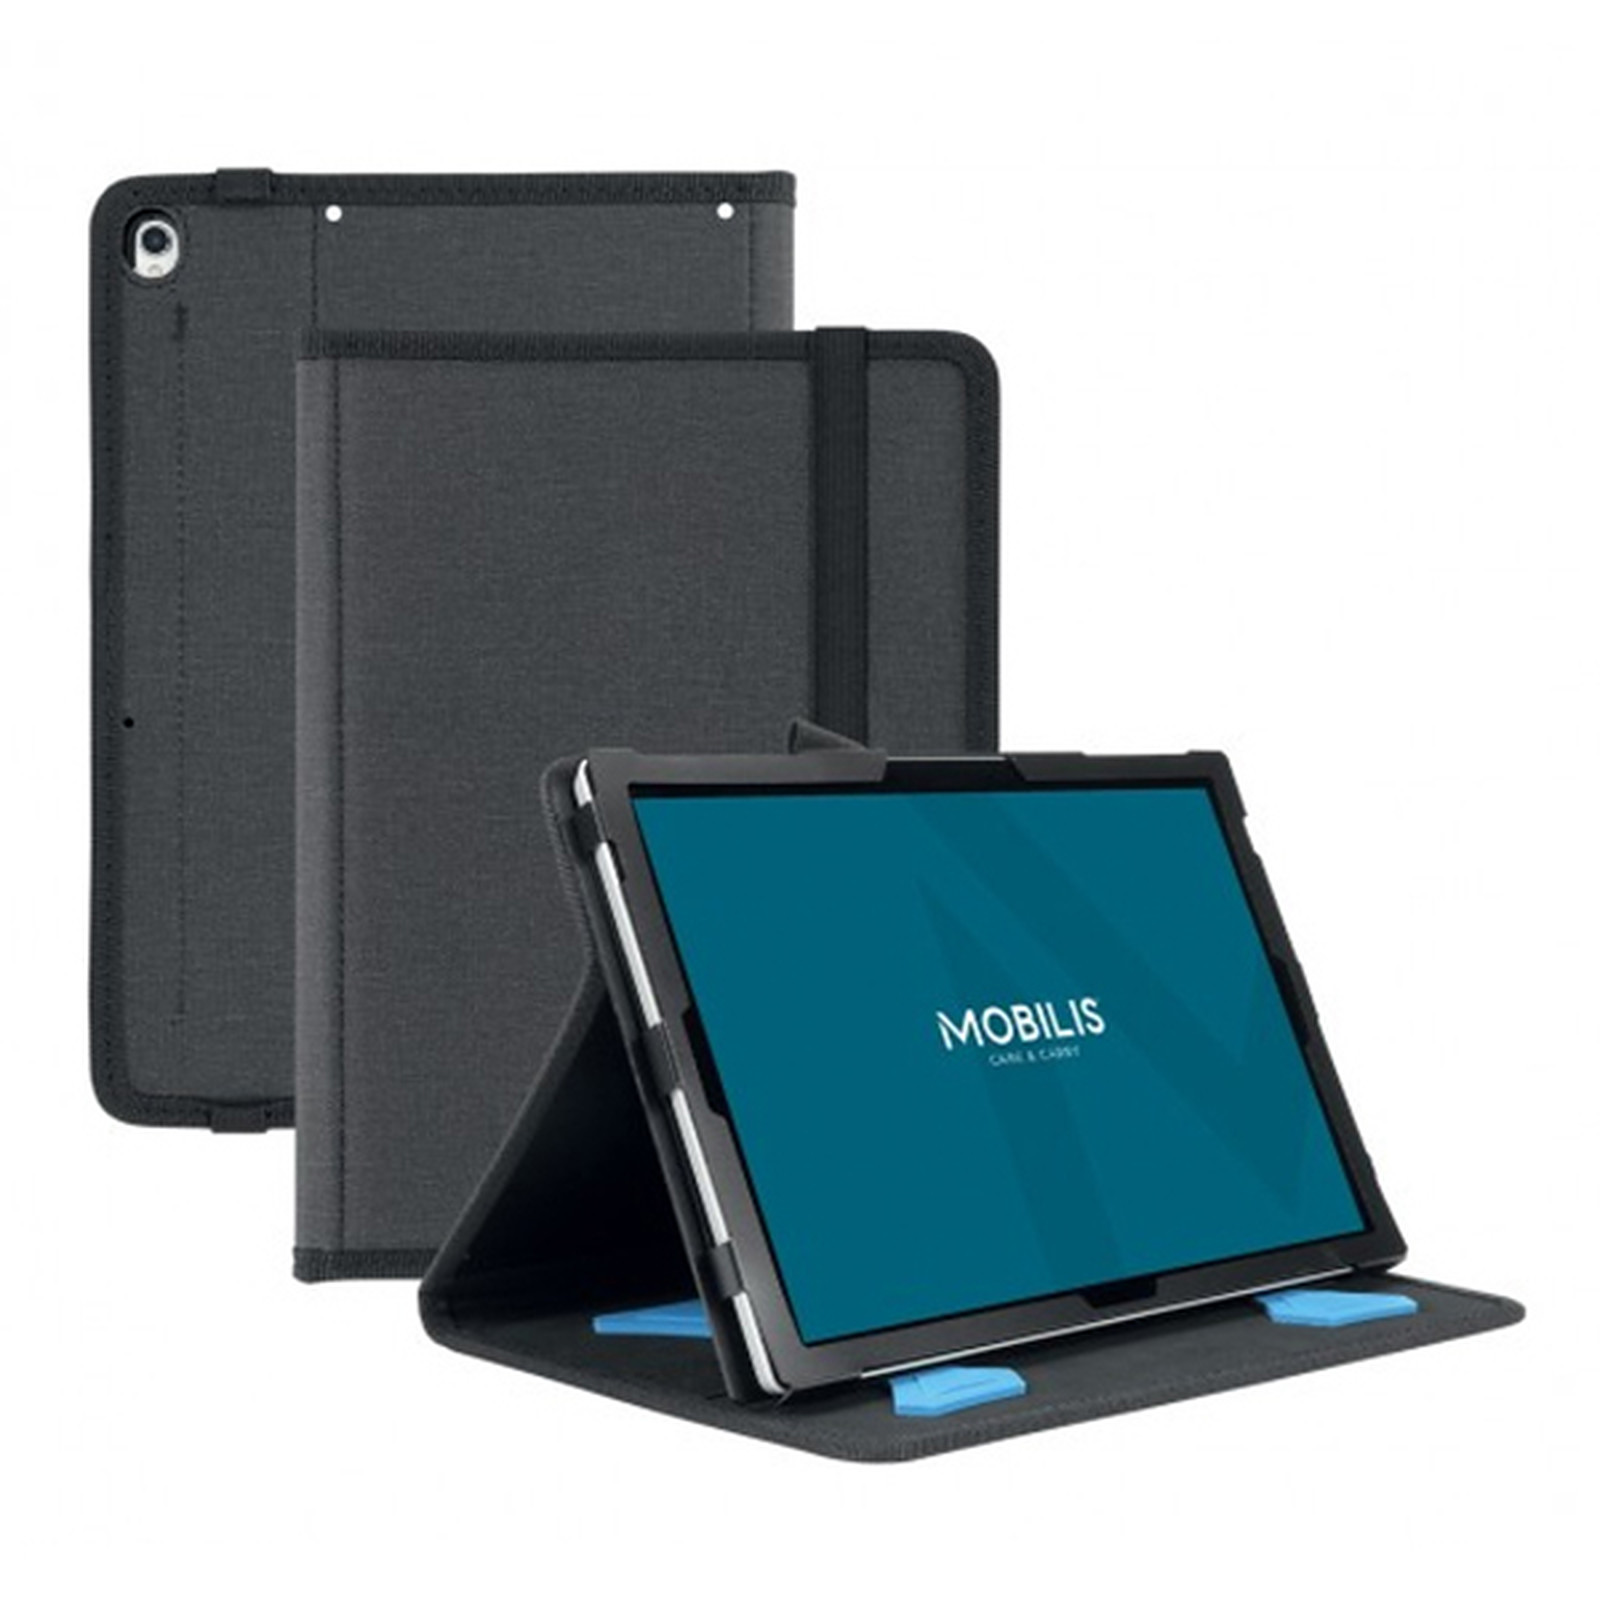 Mobilis Active Pack Case pour iPad mini (2019) - Noir - Etui tablette Mobilis